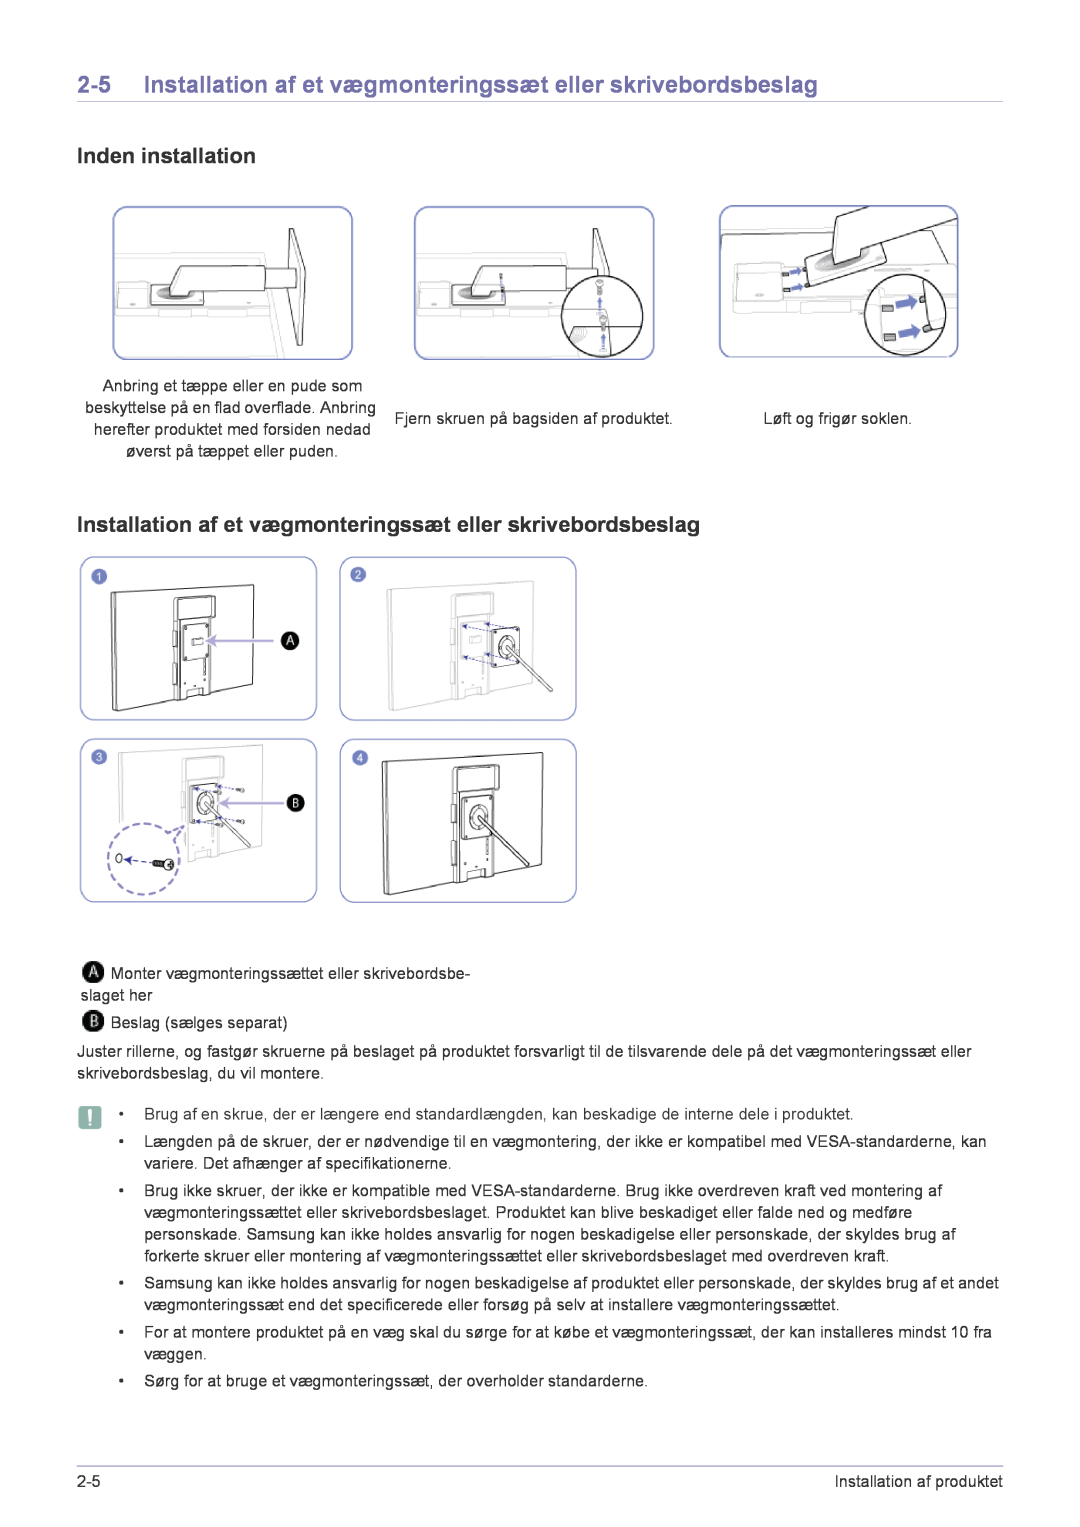 Samsung LF22NPBHBNP/EN manual Installation af et vægmonteringssæt eller skrivebordsbeslag, Inden installation 